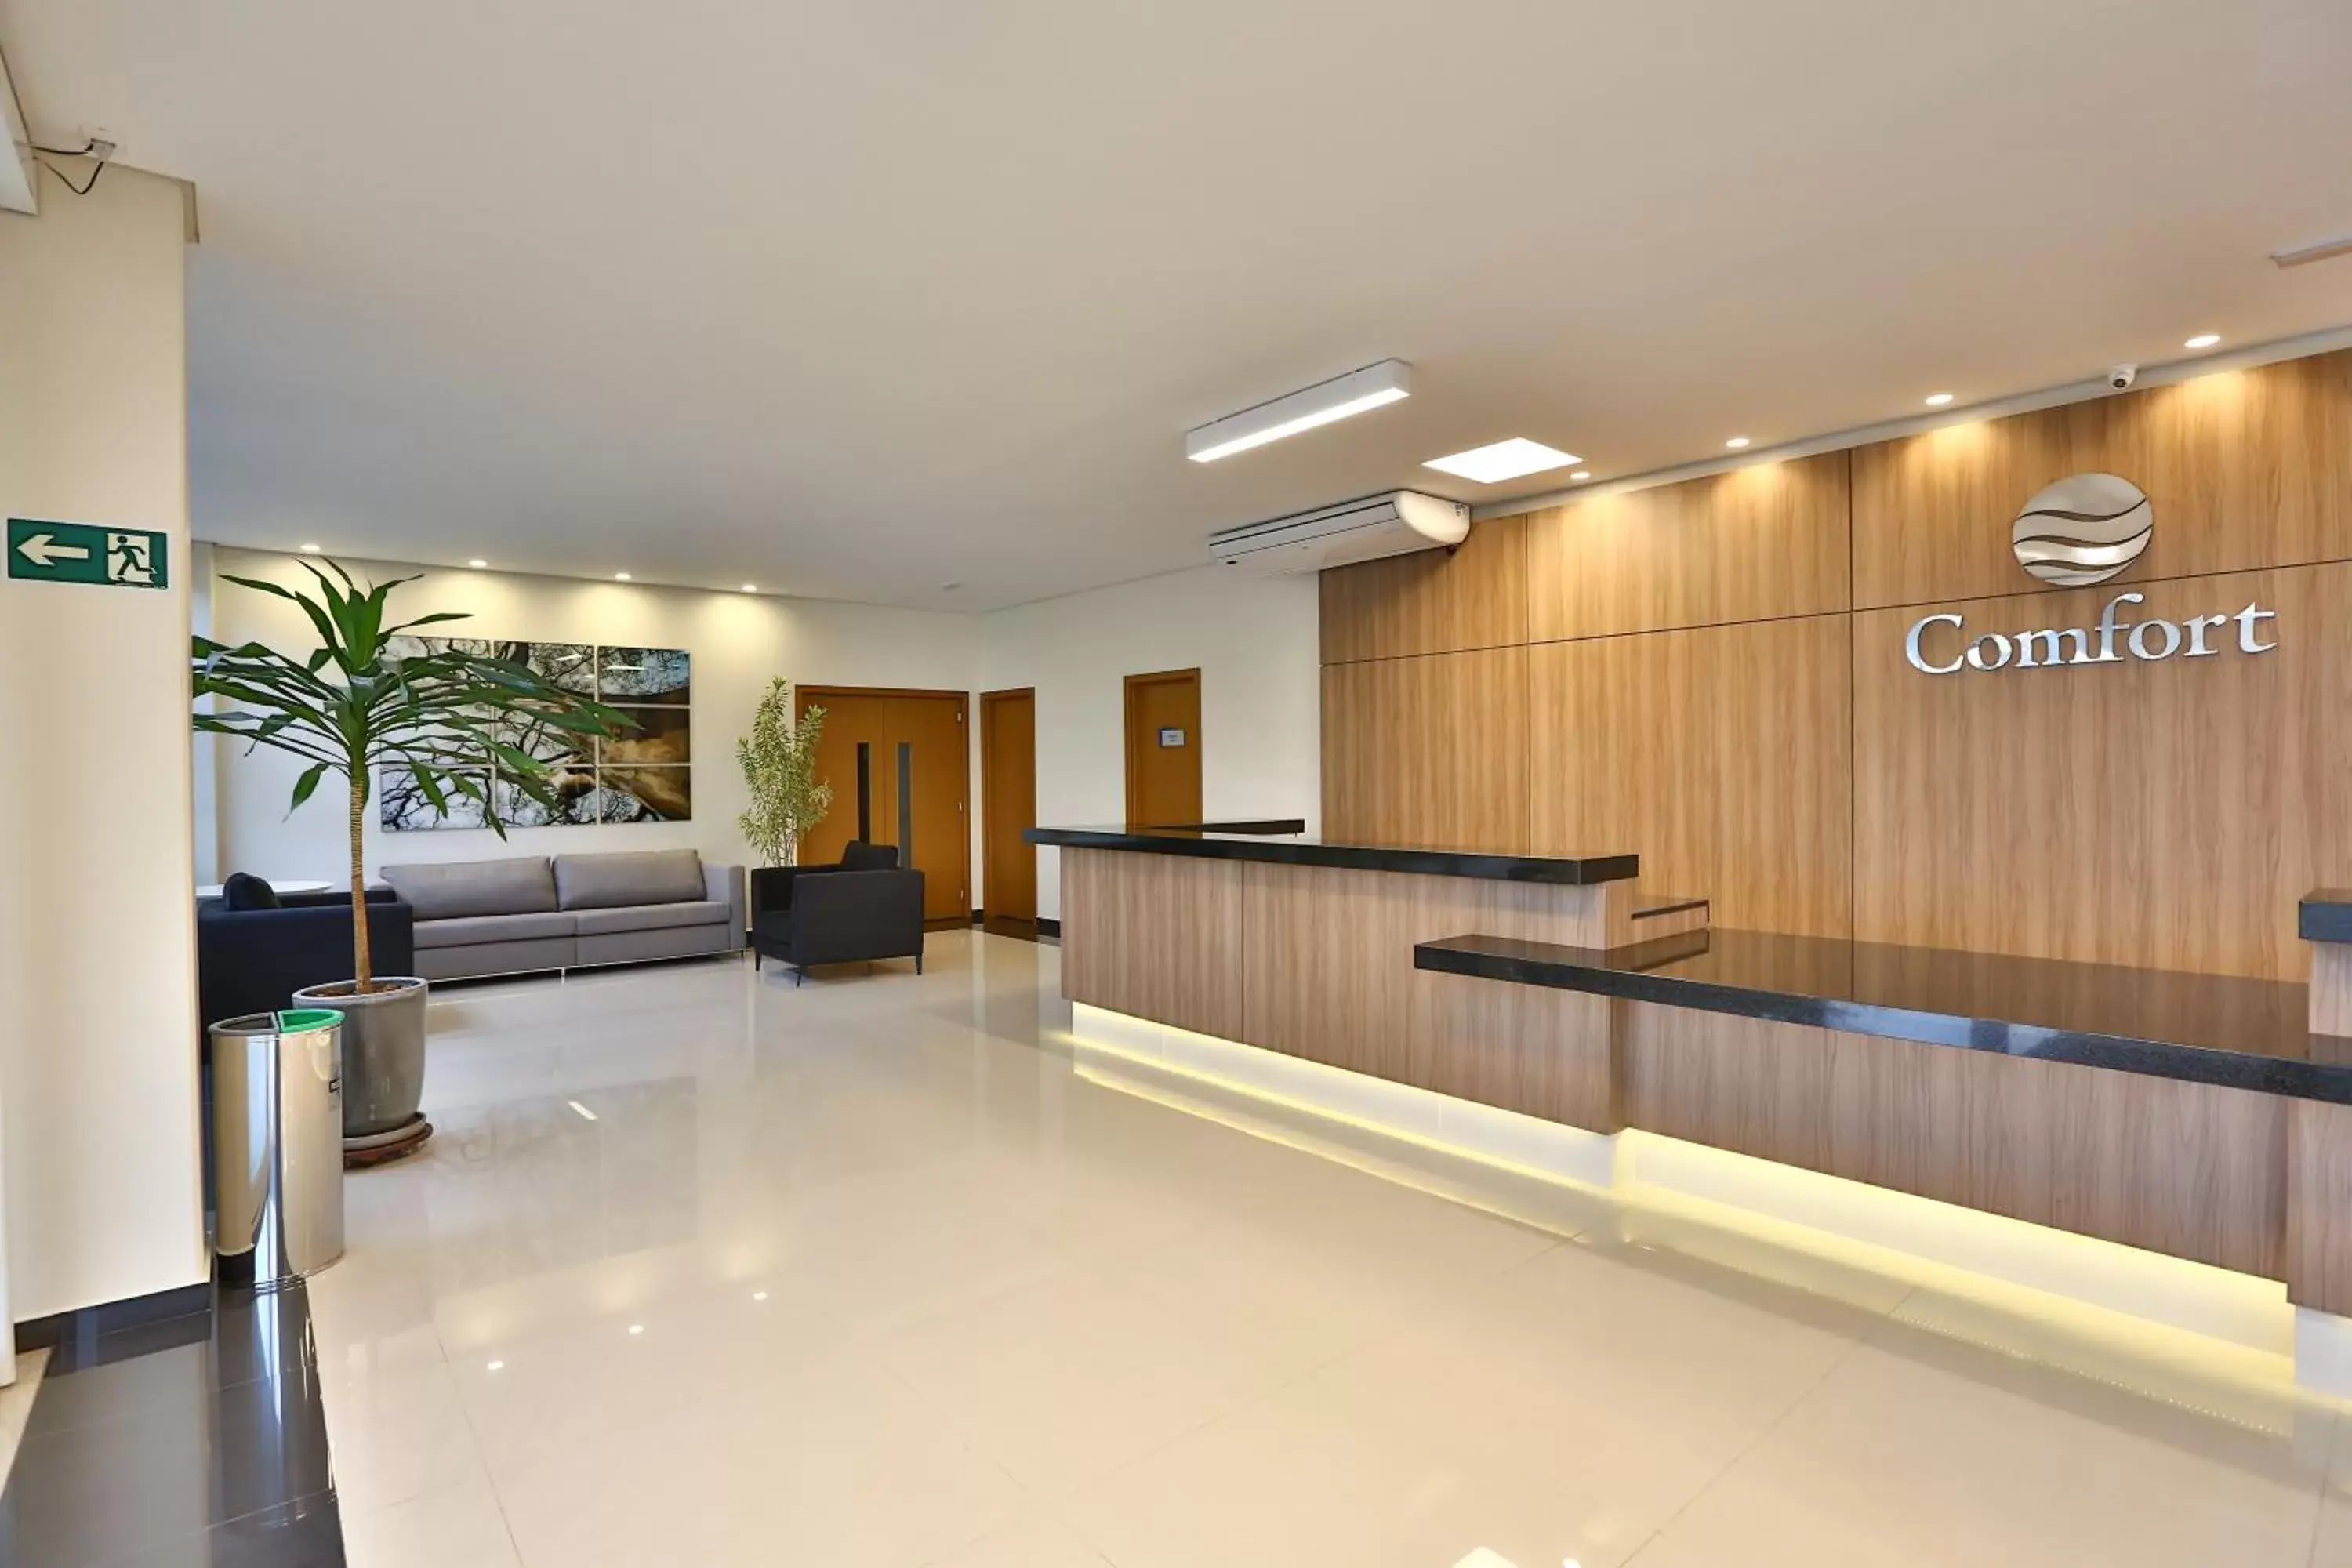 Lobby or reception, Lobby/Reception in Comfort Mogi Guaçu